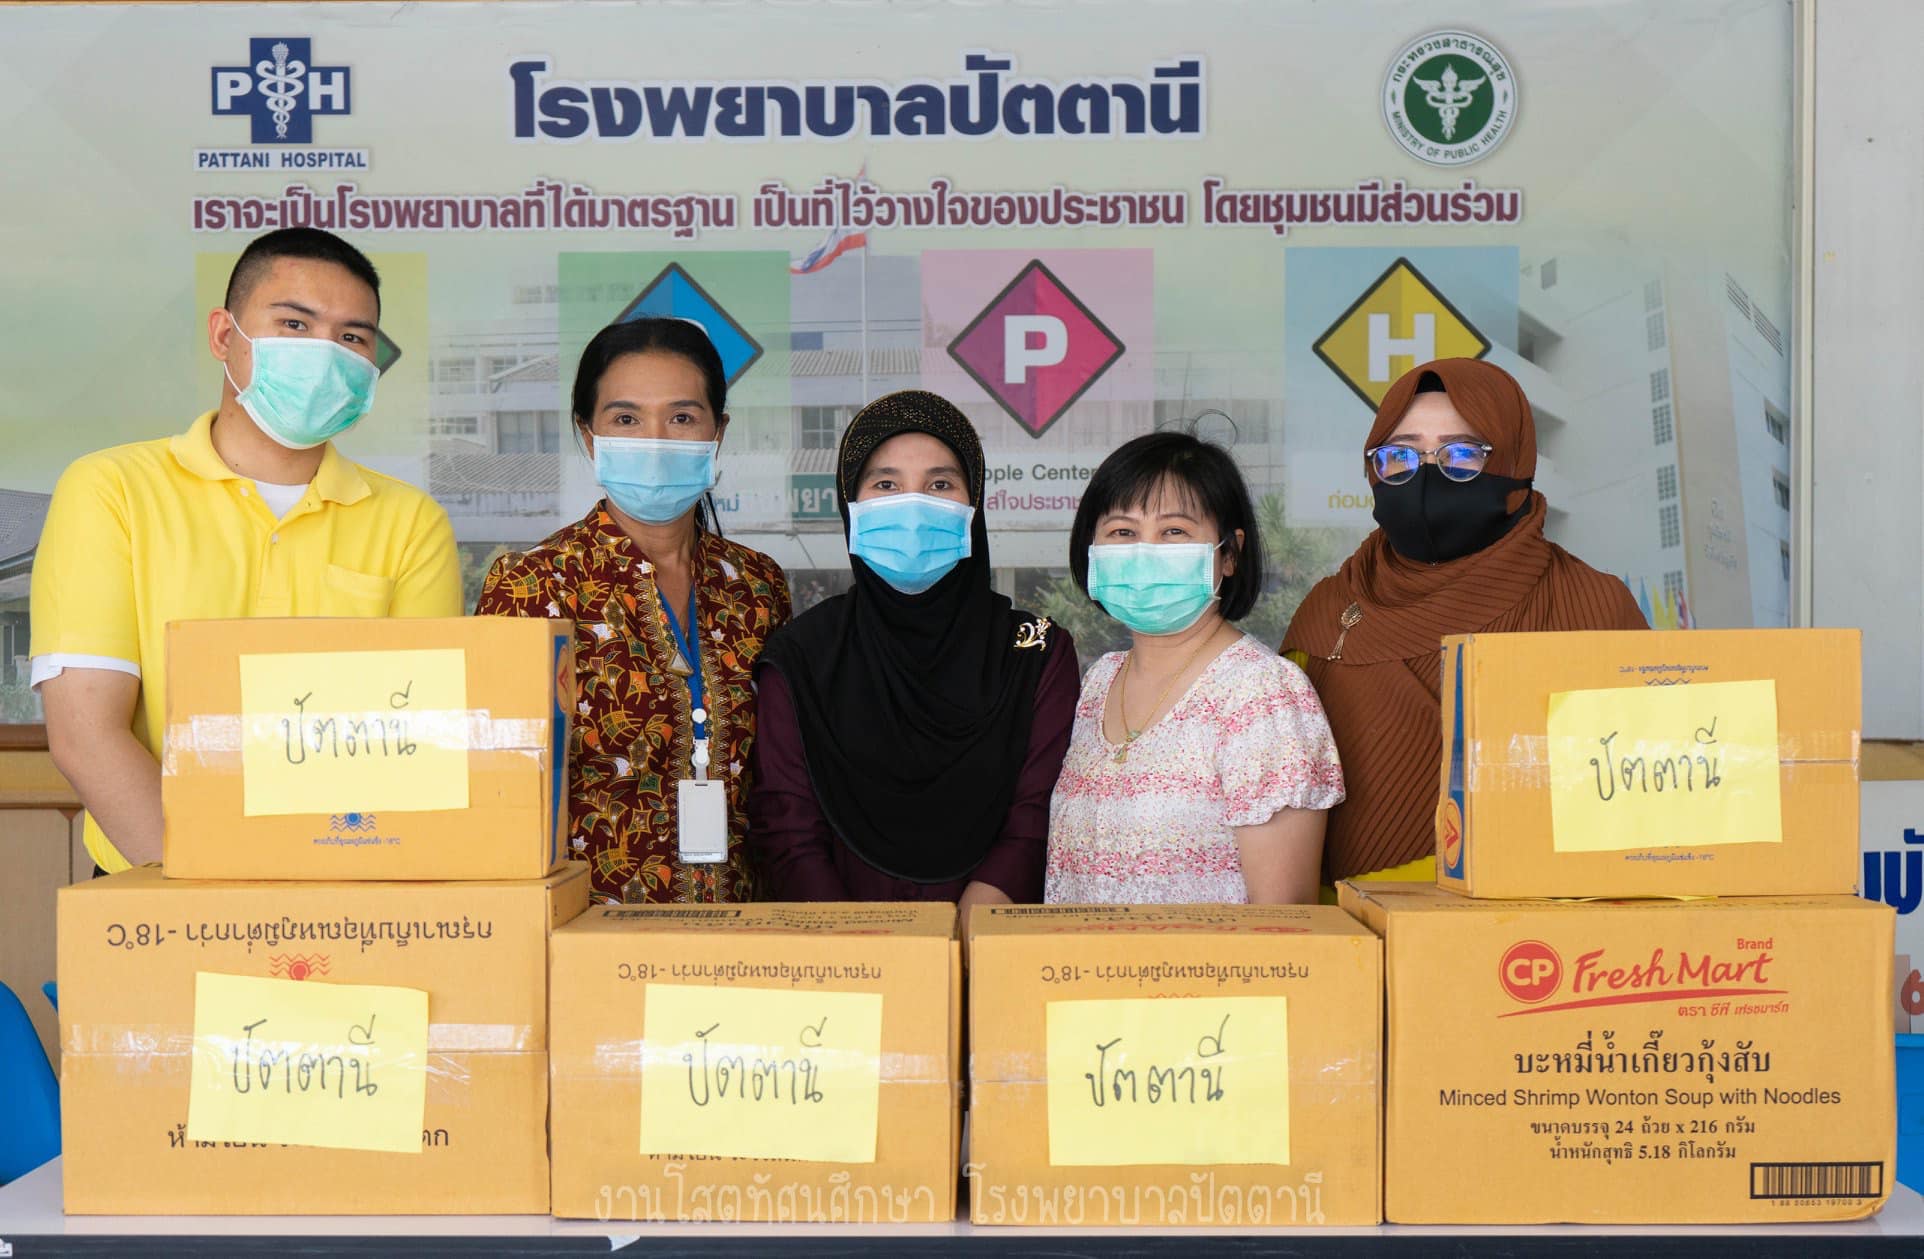 ใกล้ไกล.ก็ไปถึง CPF ส่งอาหารจากใจ ร่วมต้านภัยโควิด-19 ใน รพ.รัฐ กว่า 70 แห่งทั่วไทย